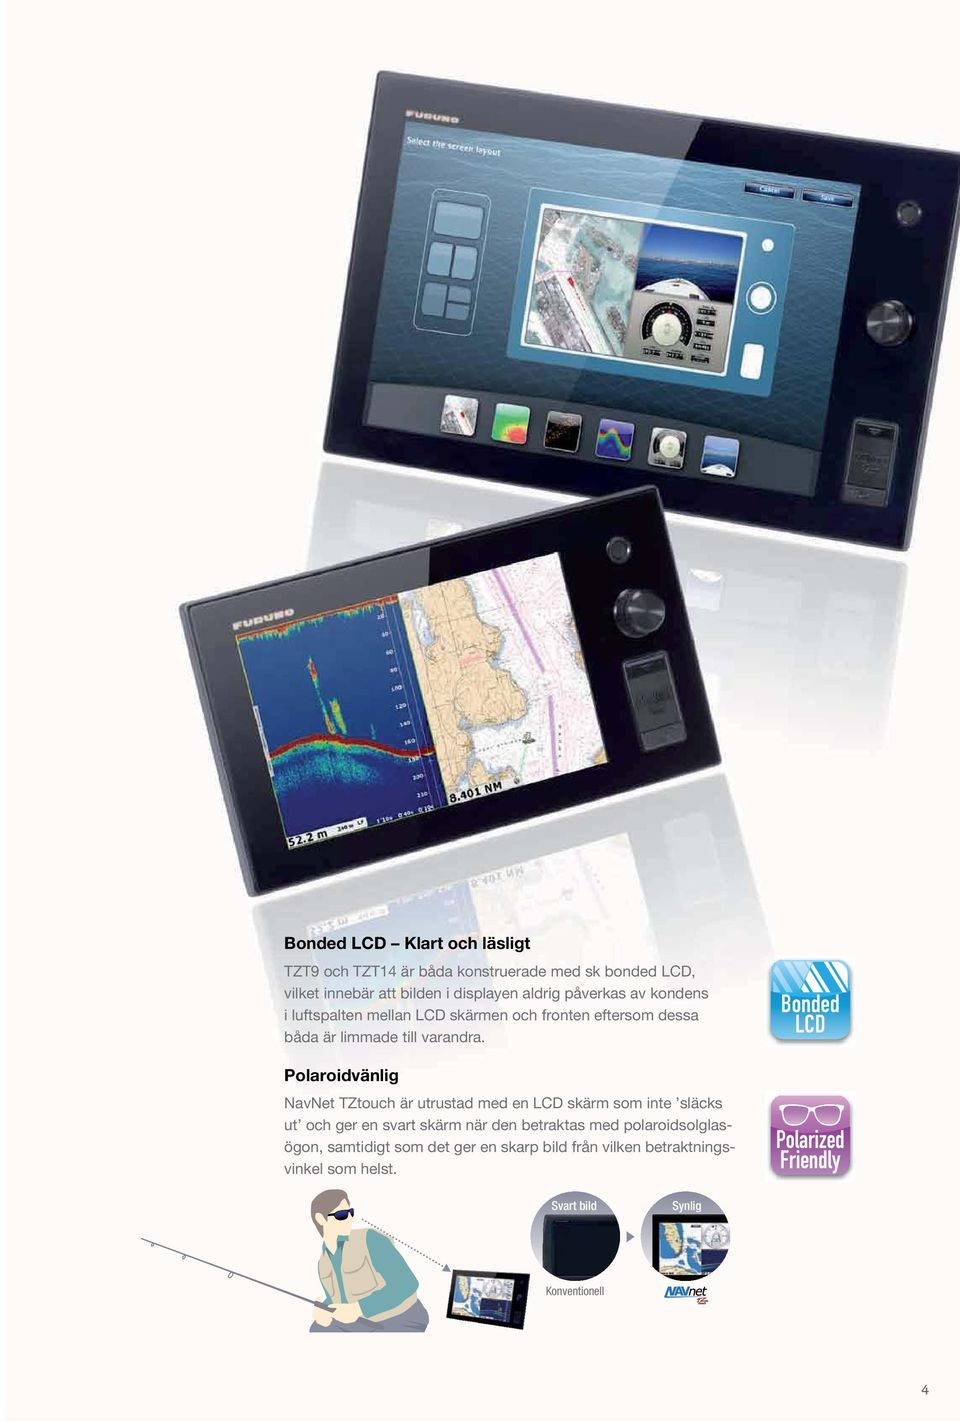 Polaroidvänlig NavNet TZtouch är utrustad med en LCD skärm som inte släcks ut och ger en svart skärm när den betraktas med